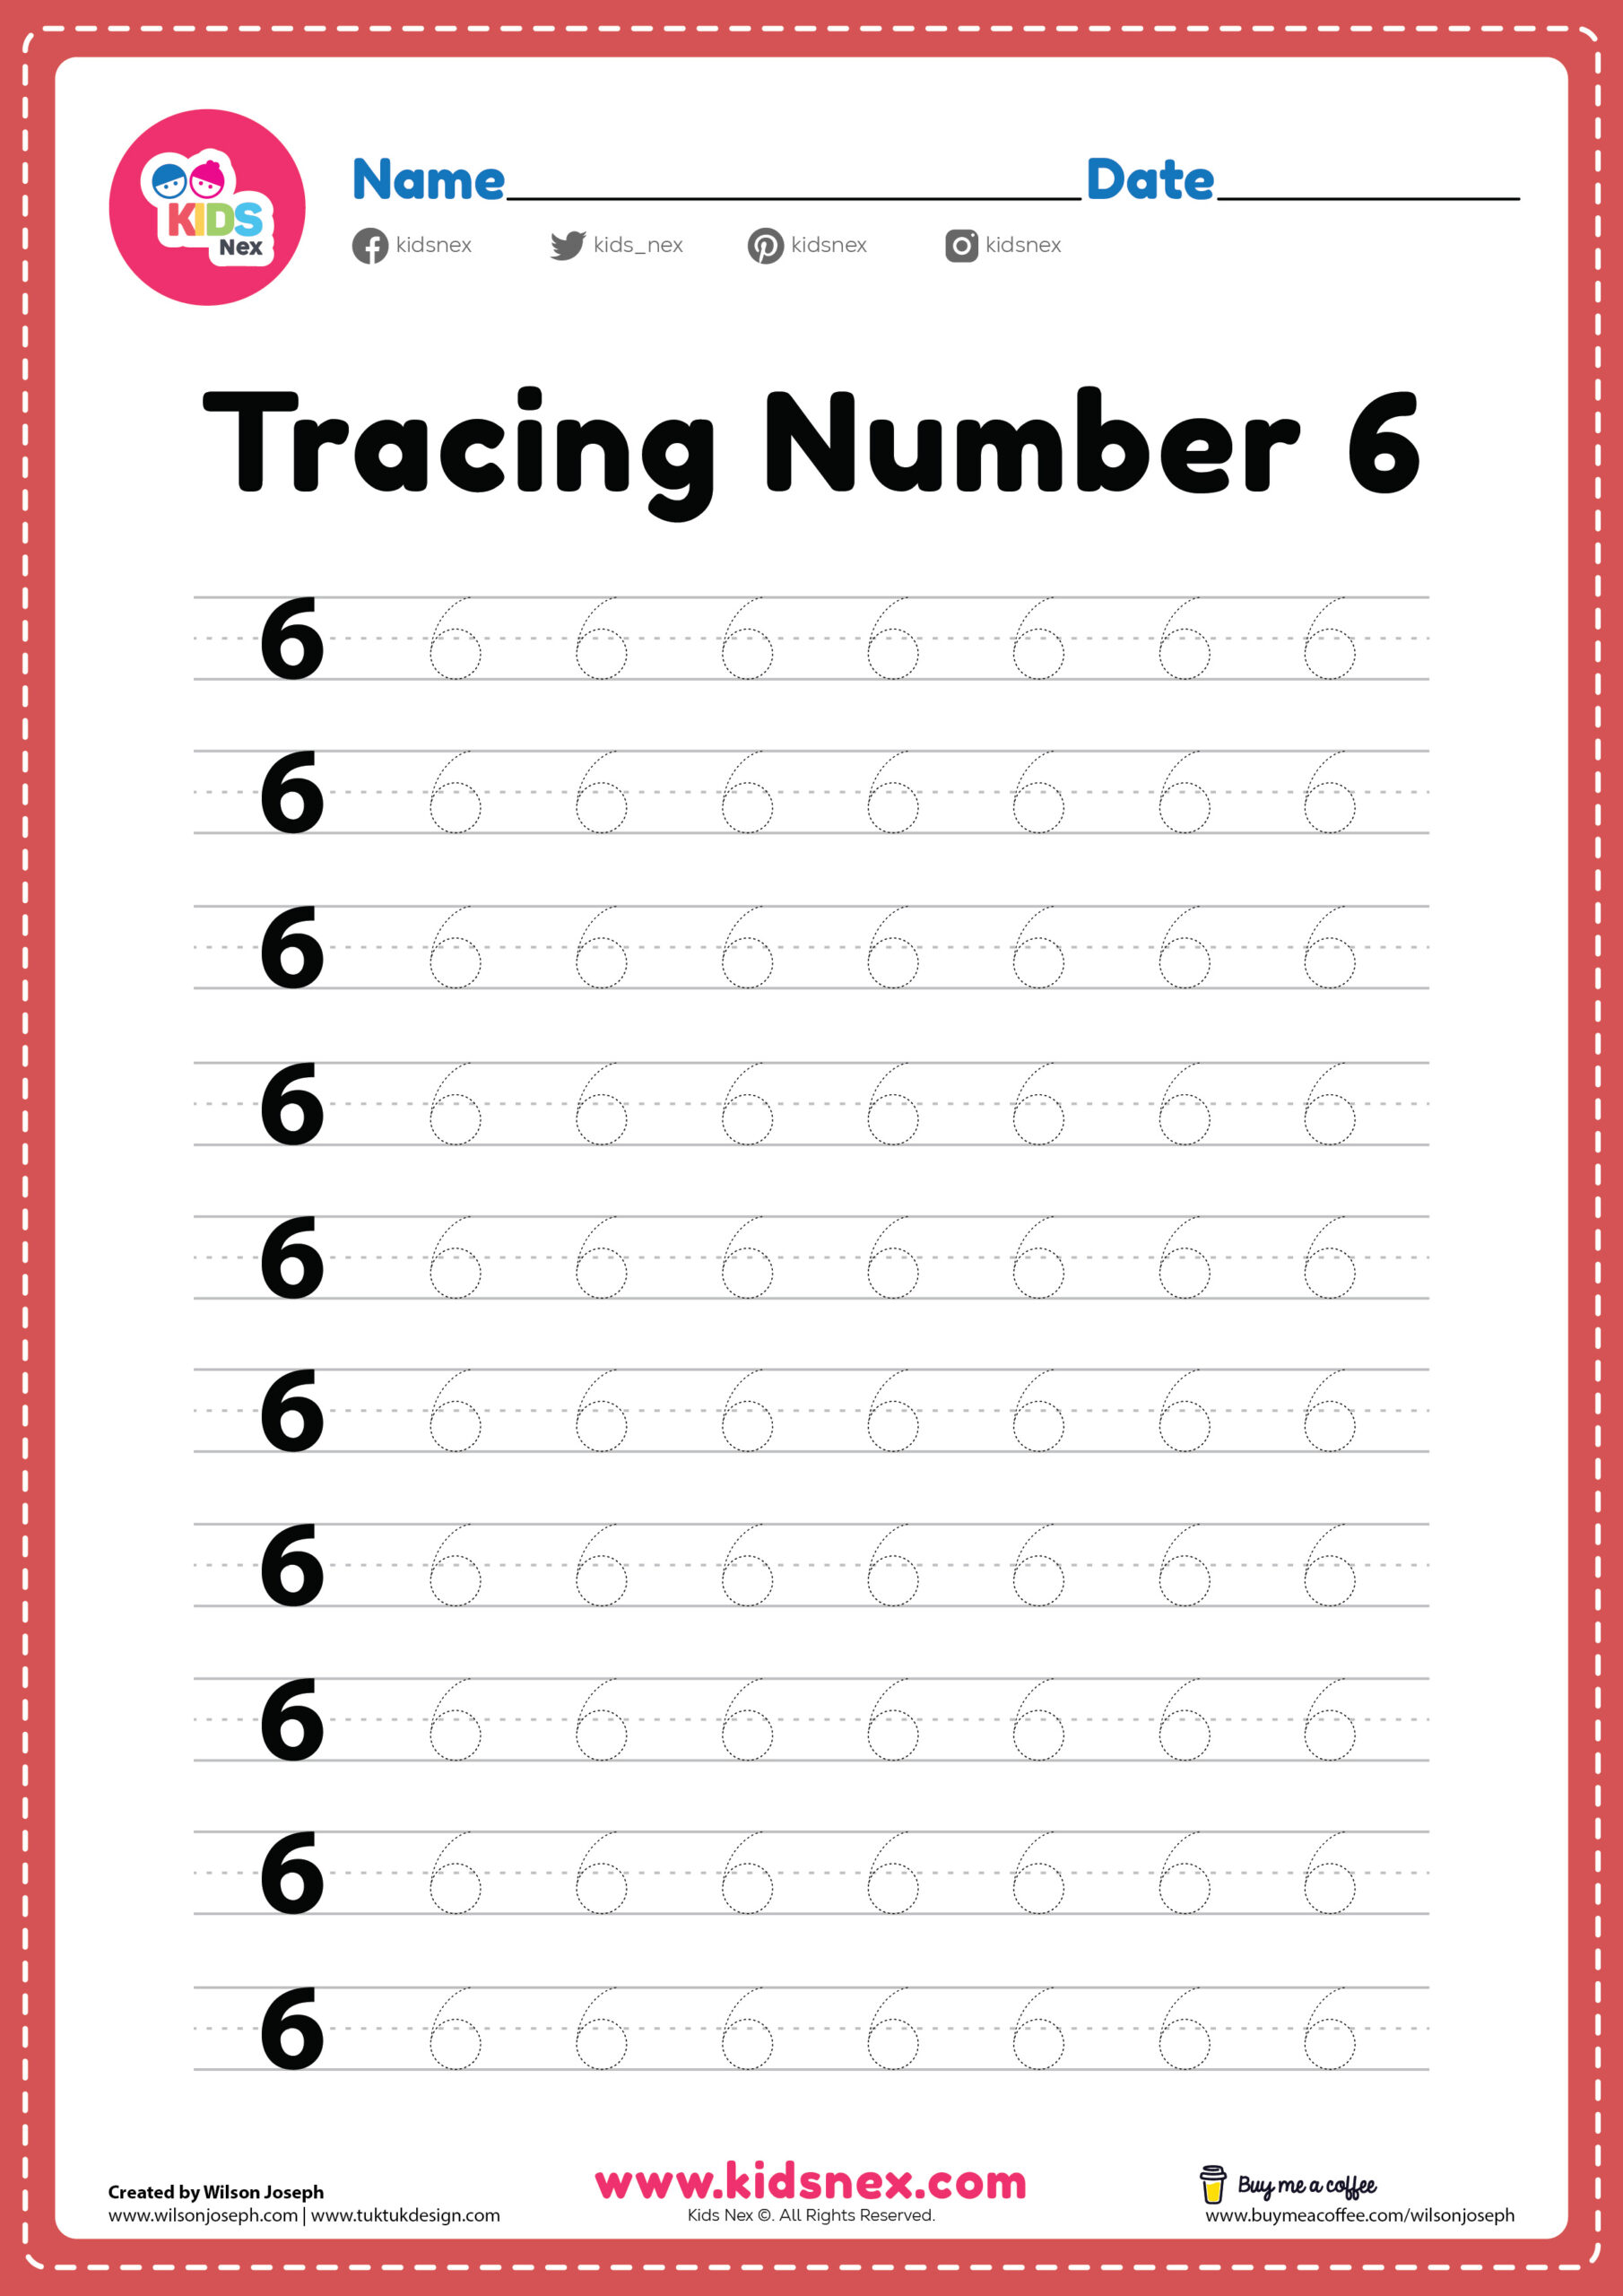 tracing-numbers-0-10-free-printable-printable-and-online-worksheets-pack-preschool-number